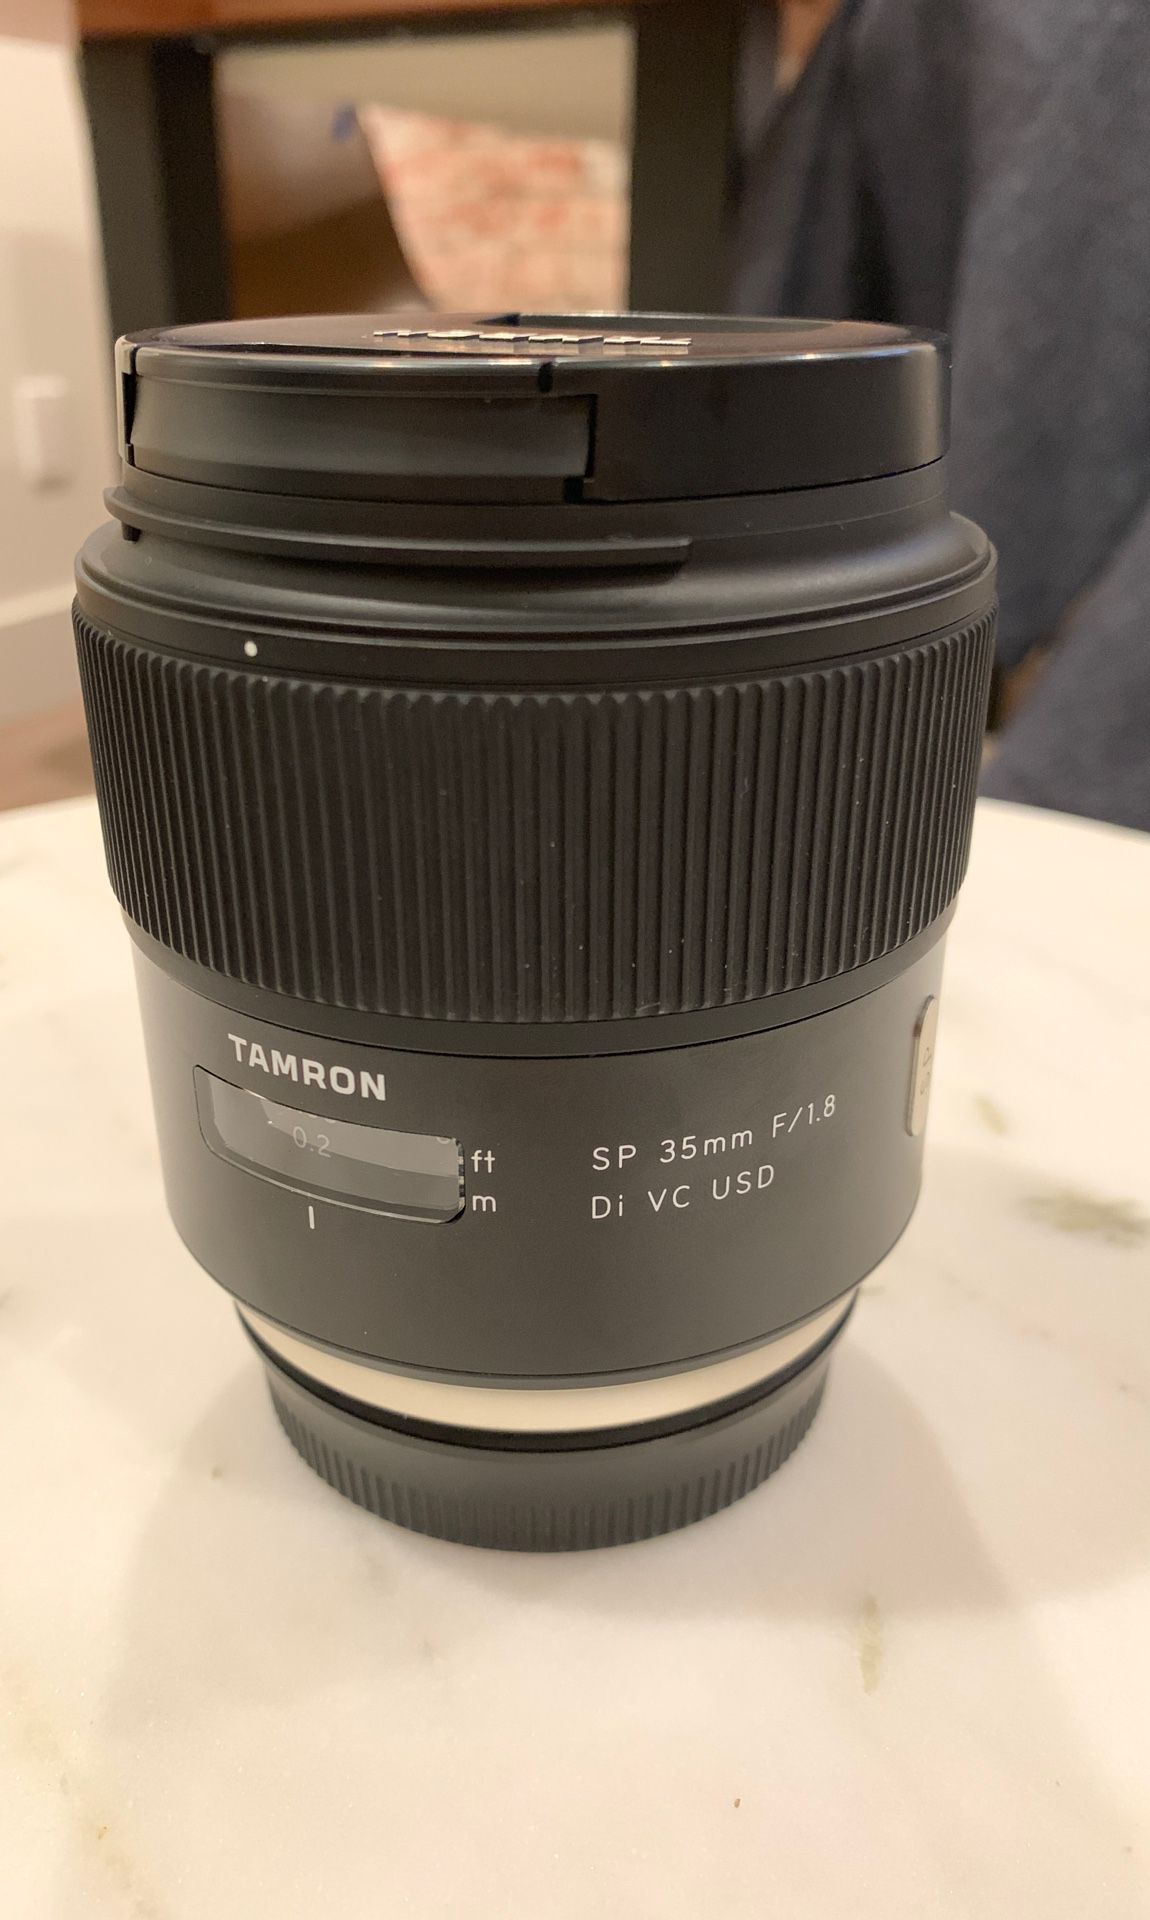 Tamron 35mm F/1.8 Di VC USD (Vibration Control, Super Sharp lens) [Canon EF Mount] Camera Lens